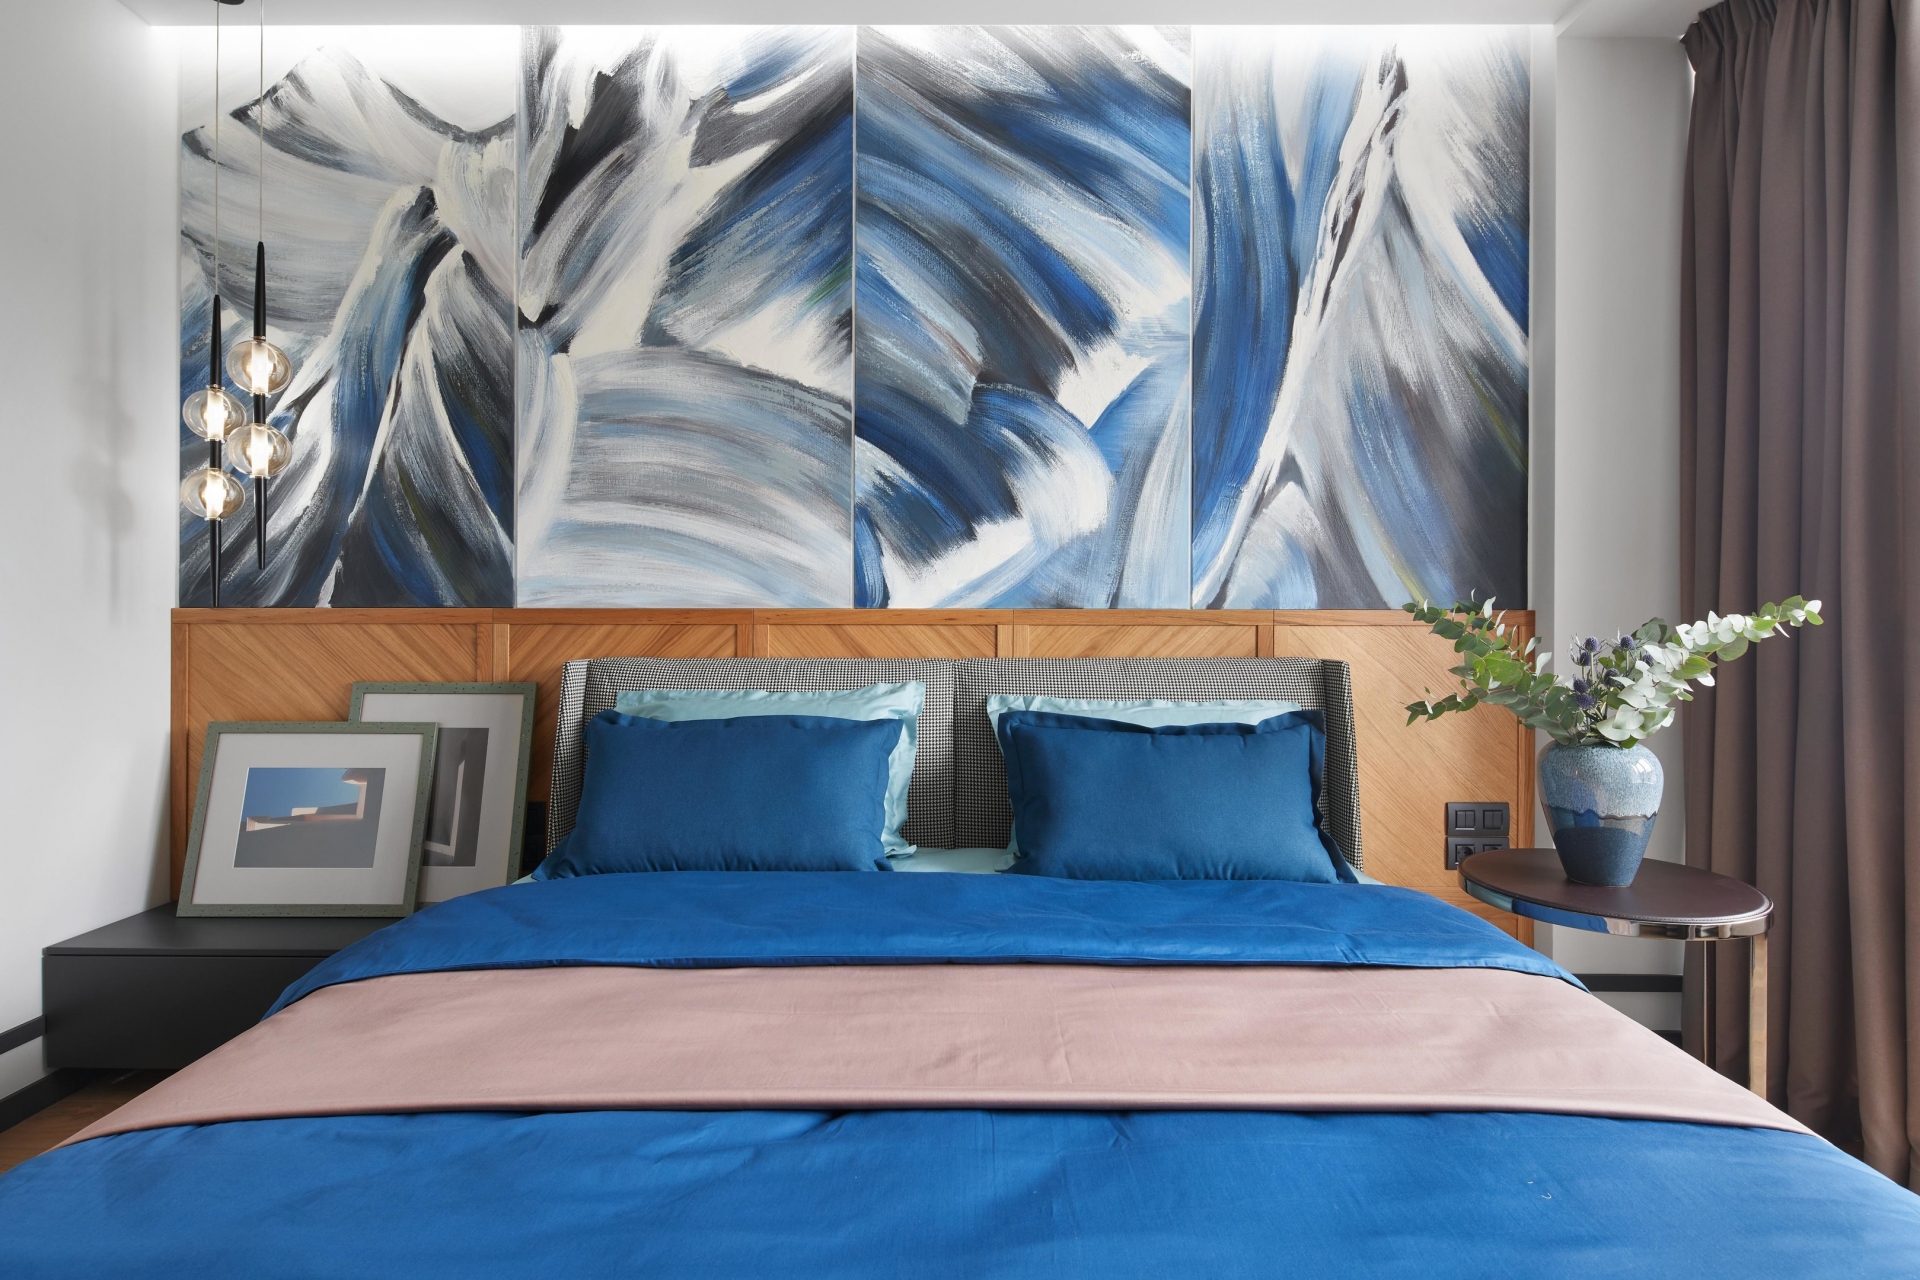 Riêng phòng ngủ được chủ nhân ưu ái hơn khi sử dụng gam màu xanh lam làm điểm nhấn. Đây cũng là căn phòng duy nhất lựa chọn sắc màu trẻ trung để trang trí. Màu xanh lam nhiều sắc thái đậm nhạt, từ bộ chăn ga gối đến bức tranh trừu tượng nổi bật trên nền tường phòng ngủ.